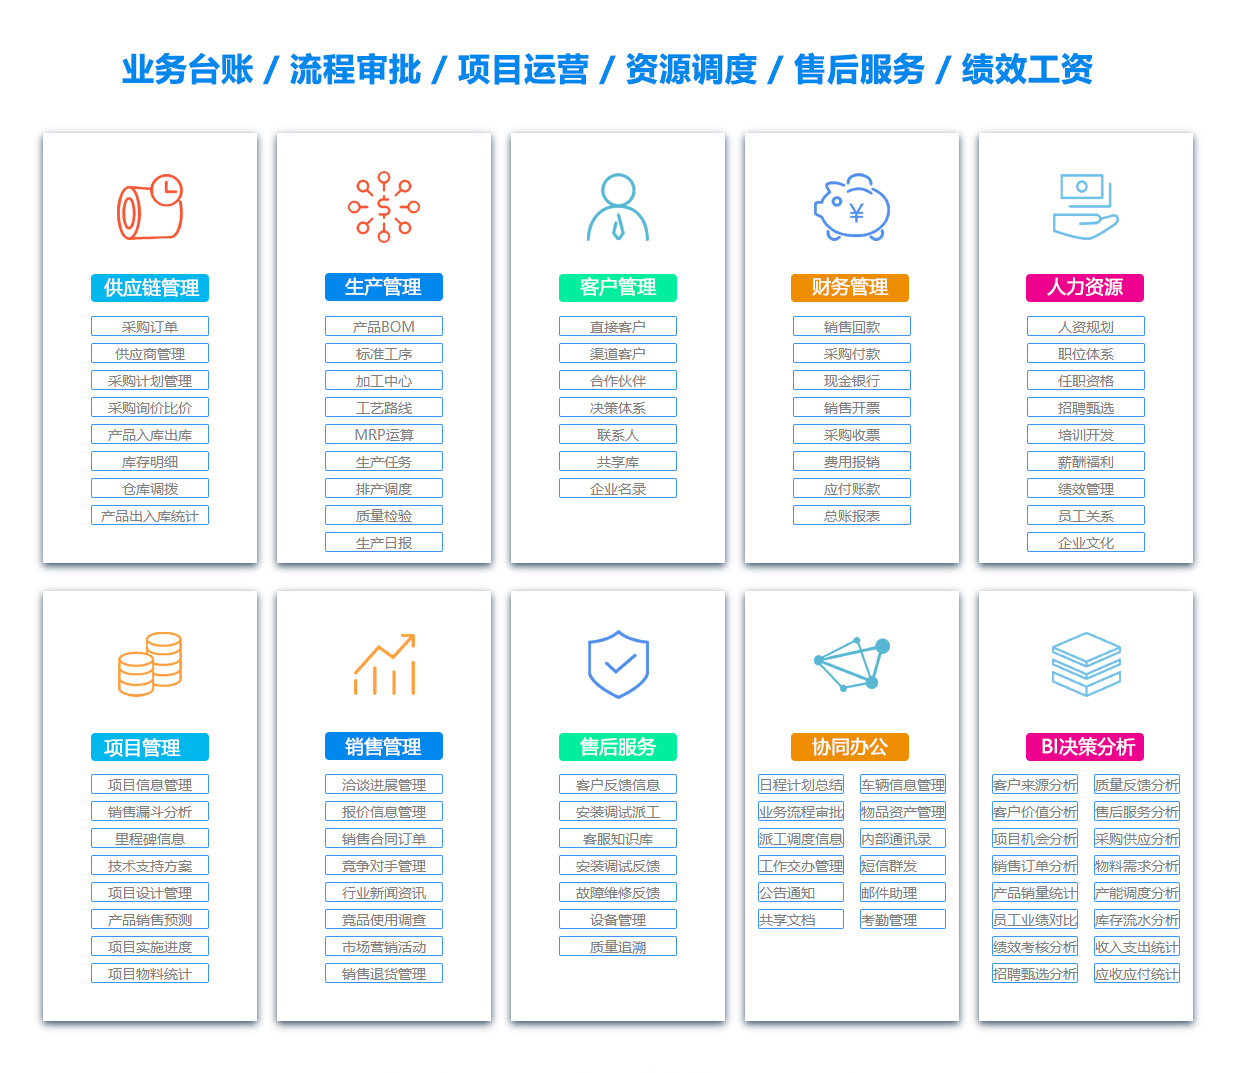 徐州SCM:供应链管理系统